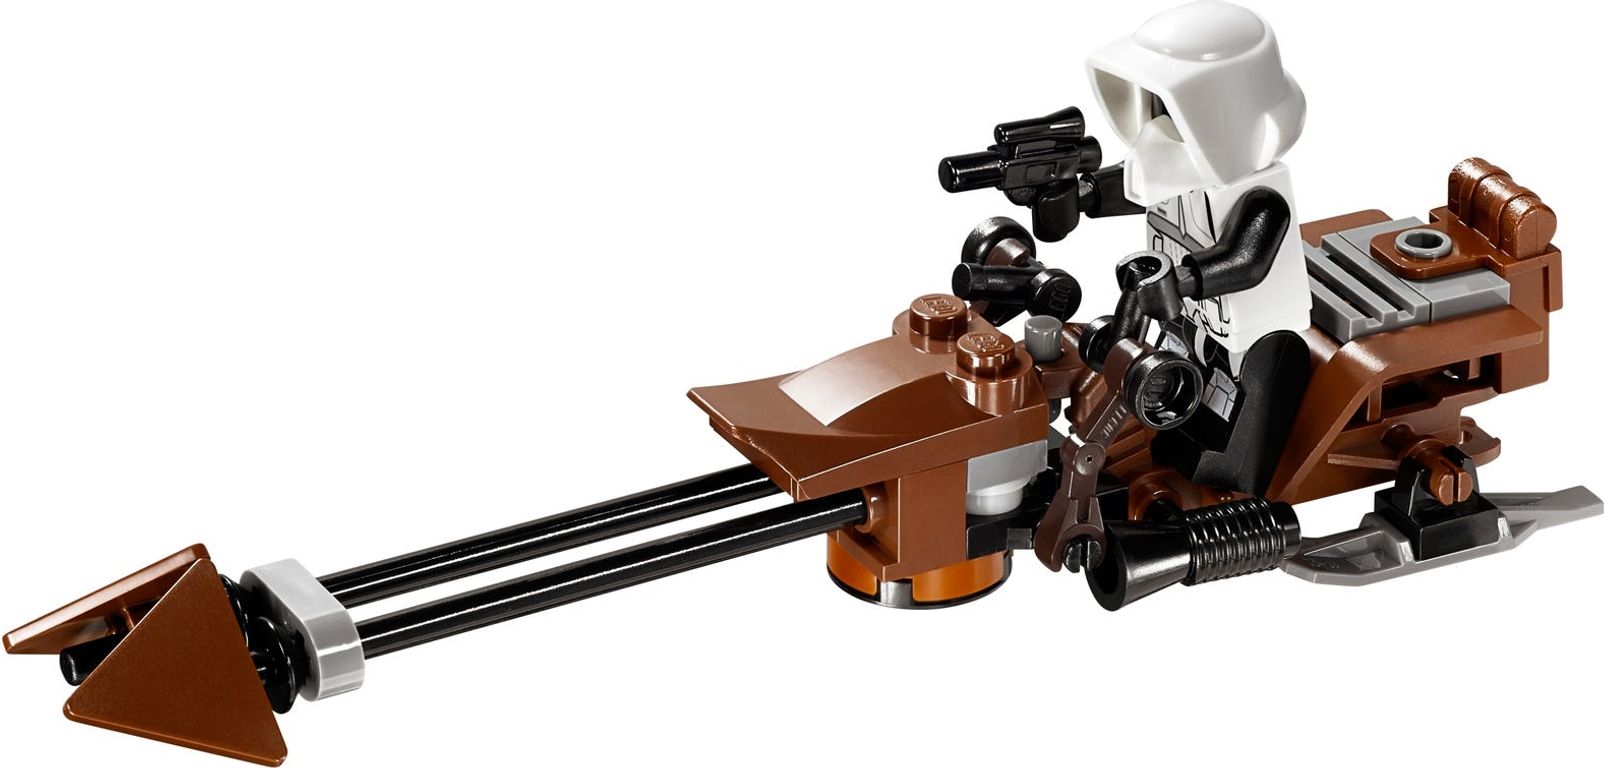 LEGO® Star Wars Ewok™ Village components